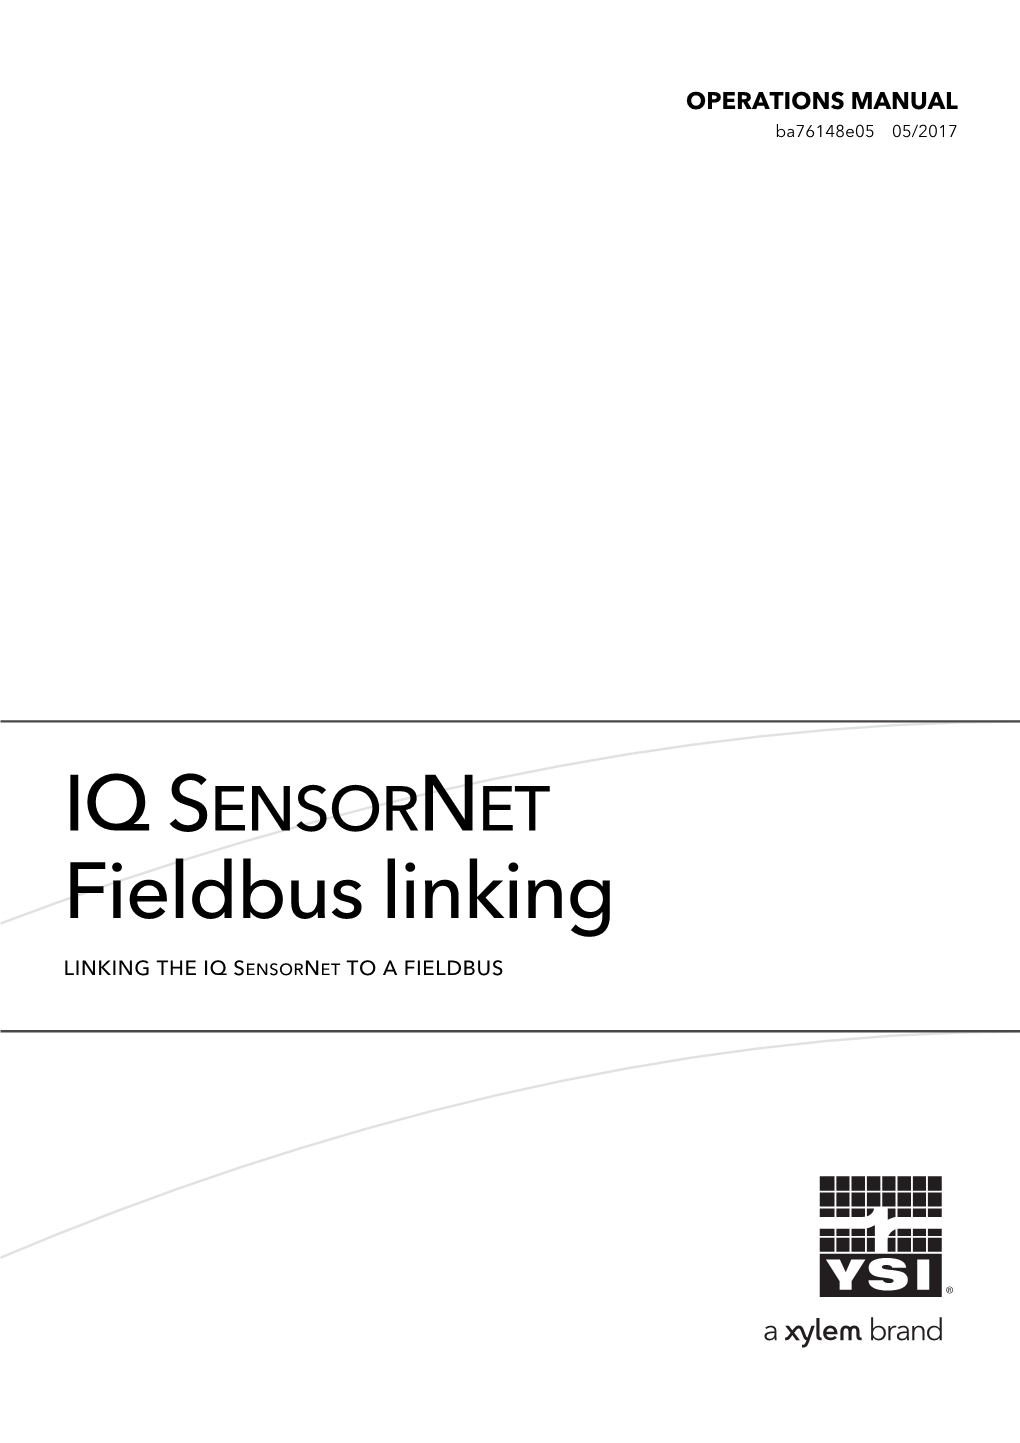 IQ SENSORNET Fieldbus Linking